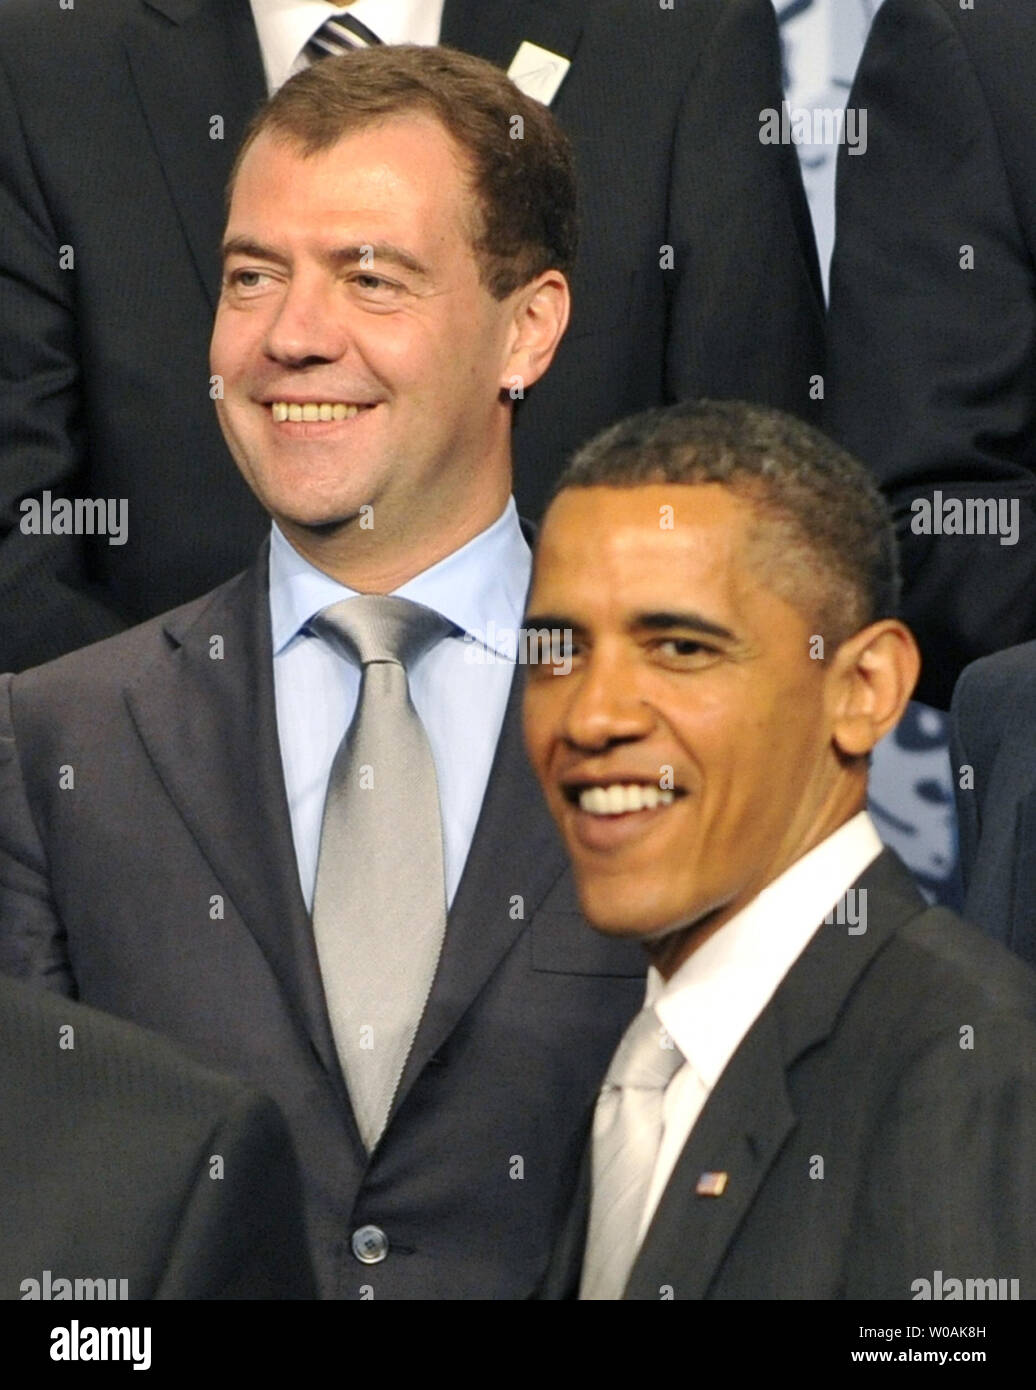 Us-Präsident Barack Obama (R) und der russische Präsident Dmitri Medwedew posieren für ein Gruppenfoto während der G20-Gipfel in Toronto, Ontario am 27. Juni 2010. UPI/Alex Volgin Stockfoto